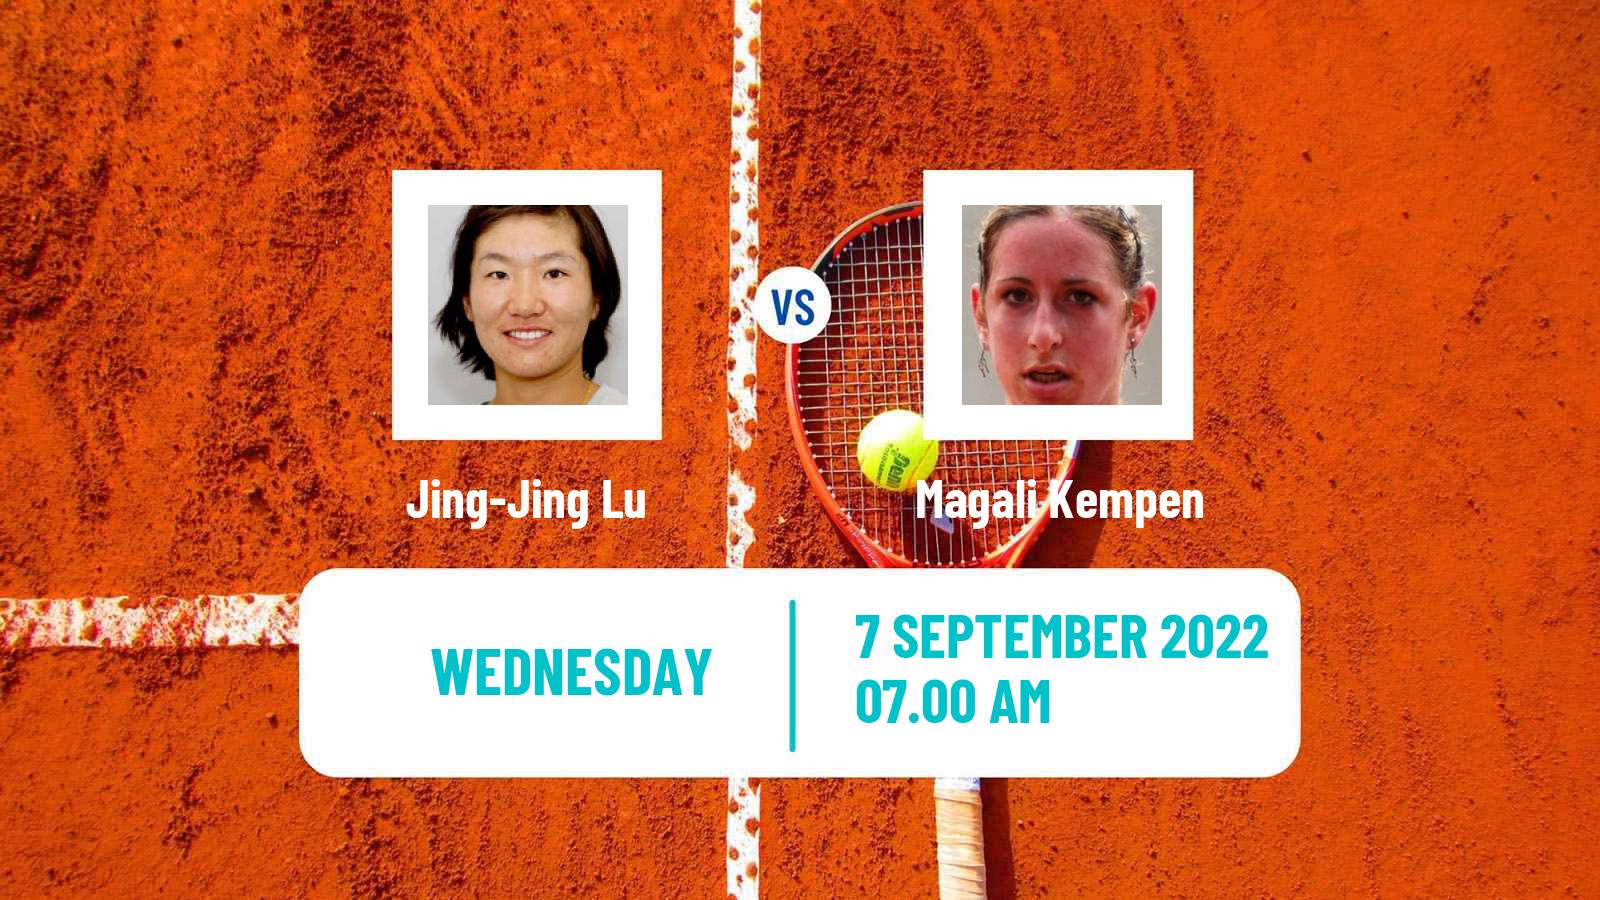 Tennis ITF Tournaments Jing-Jing Lu - Magali Kempen